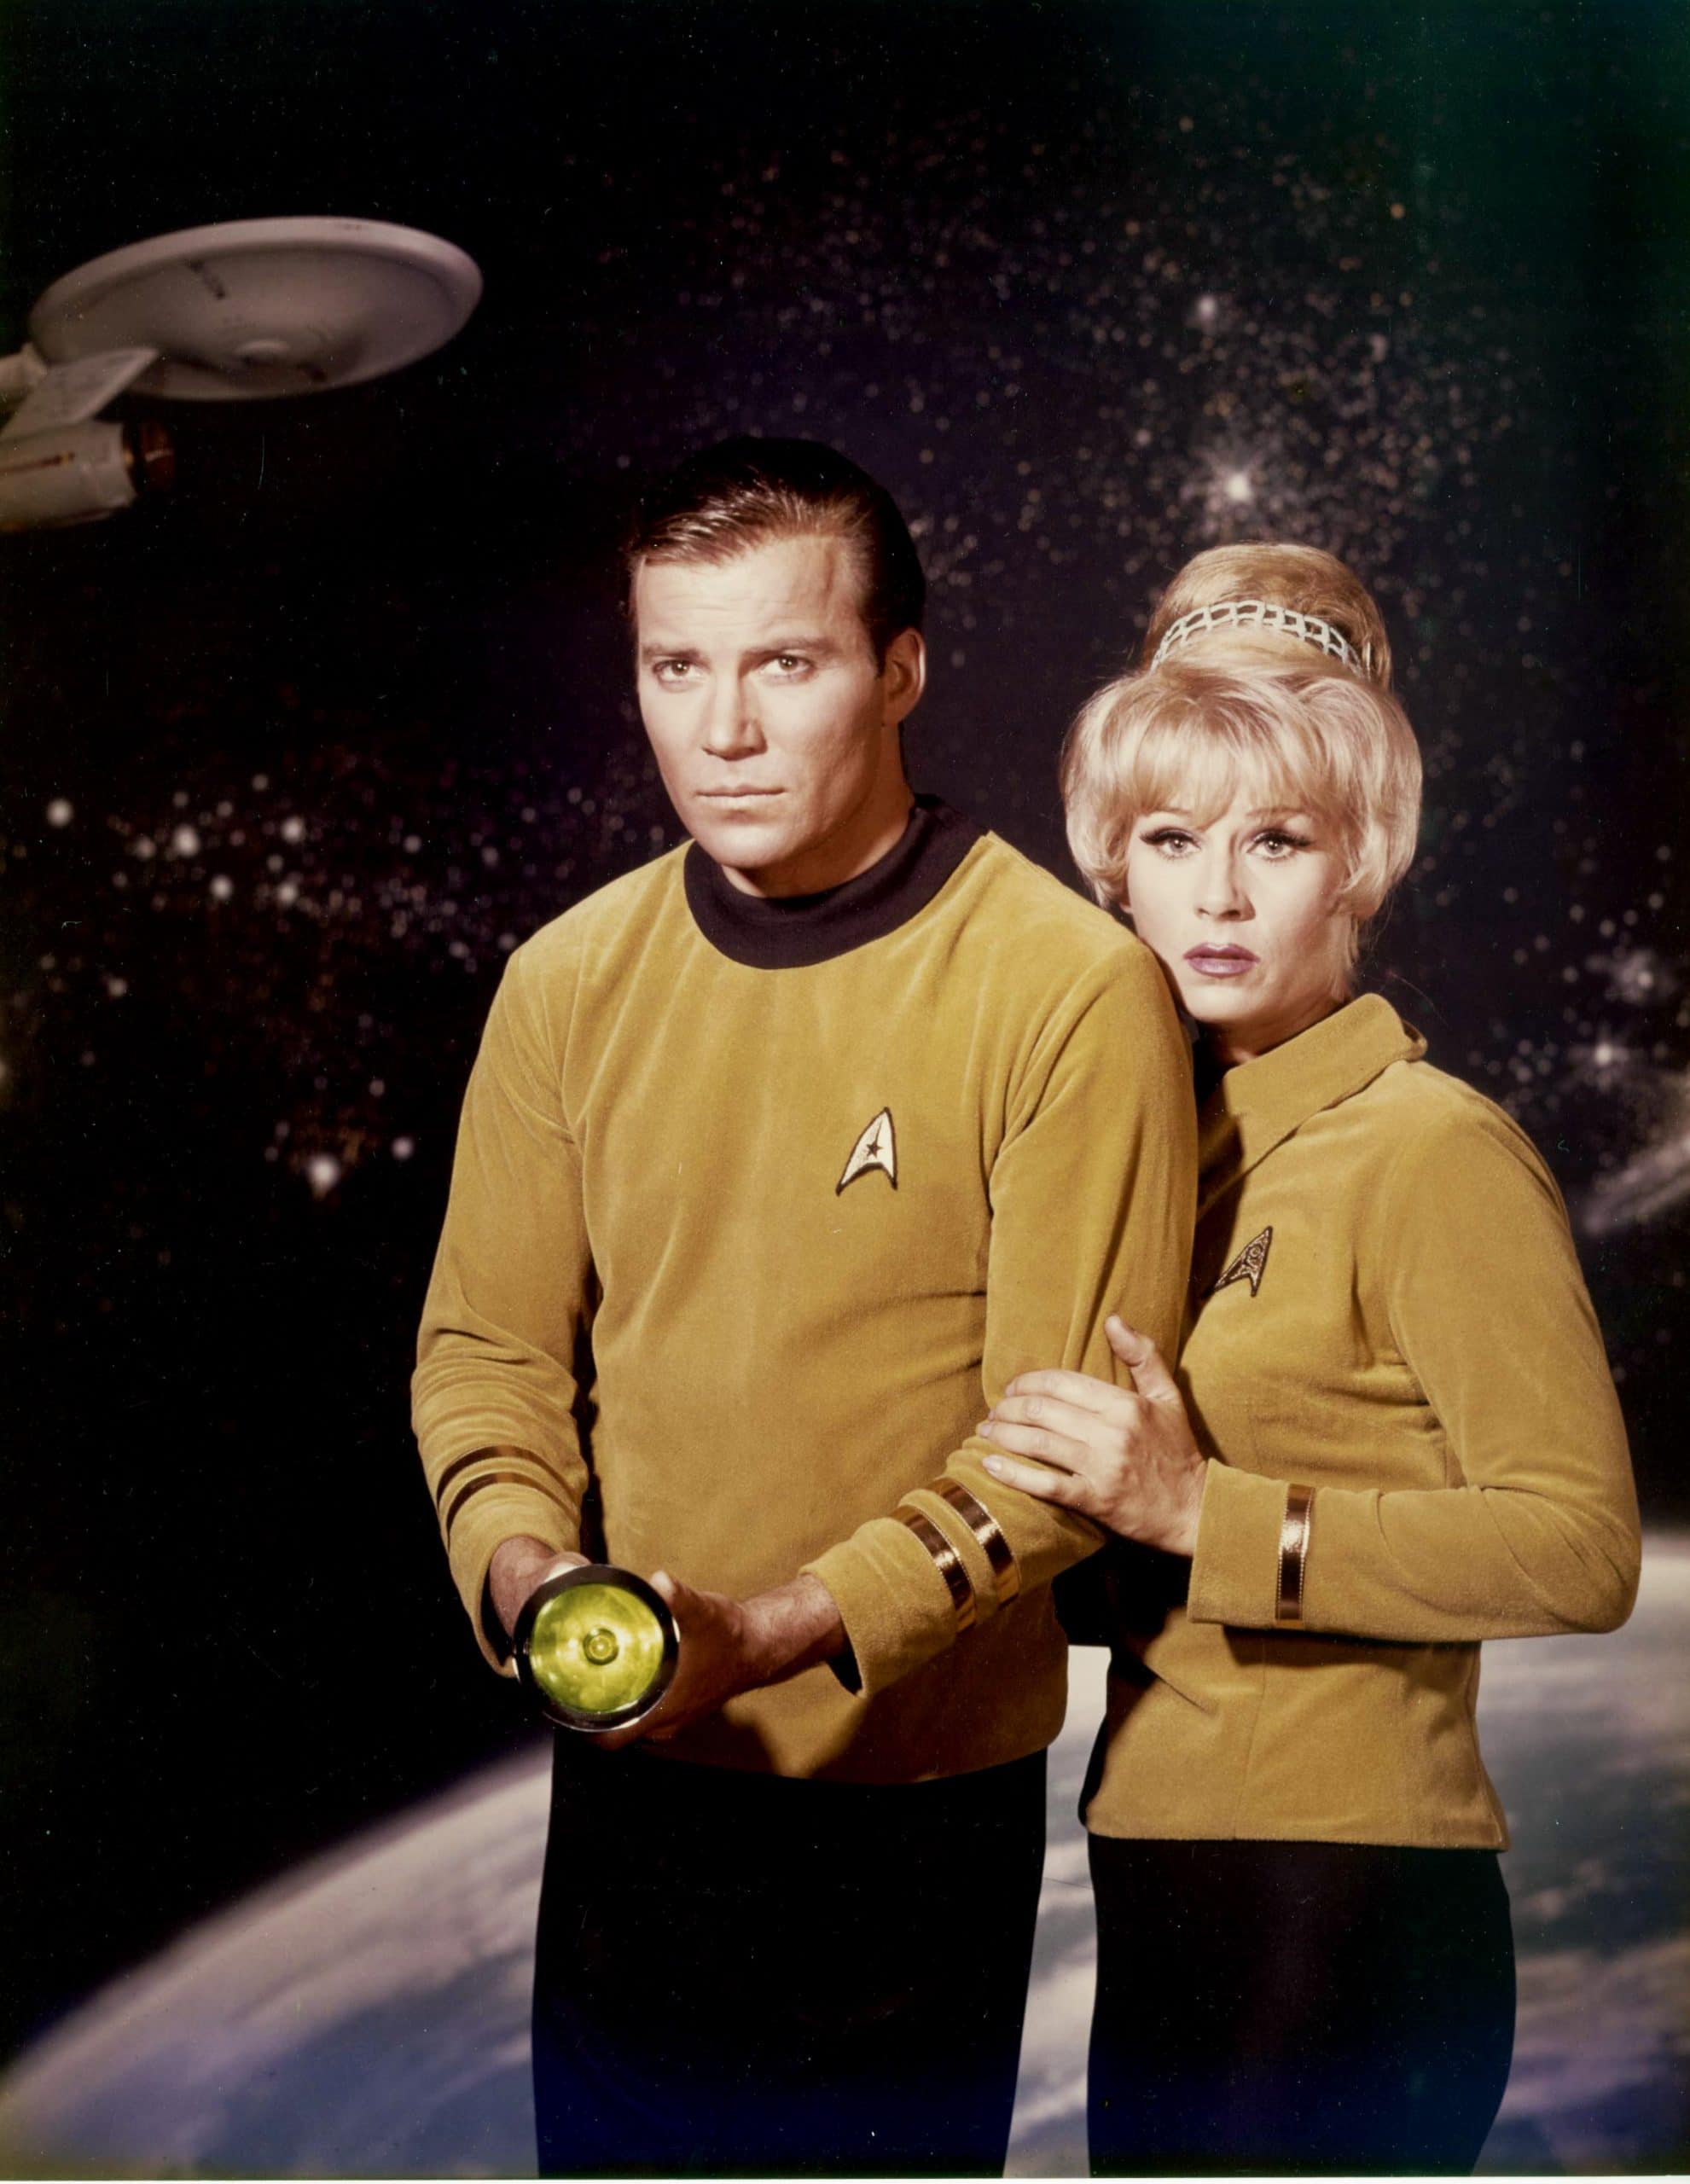 STAR TREK, from left, William Shatner, Grace Lee Whitney, 1966 season